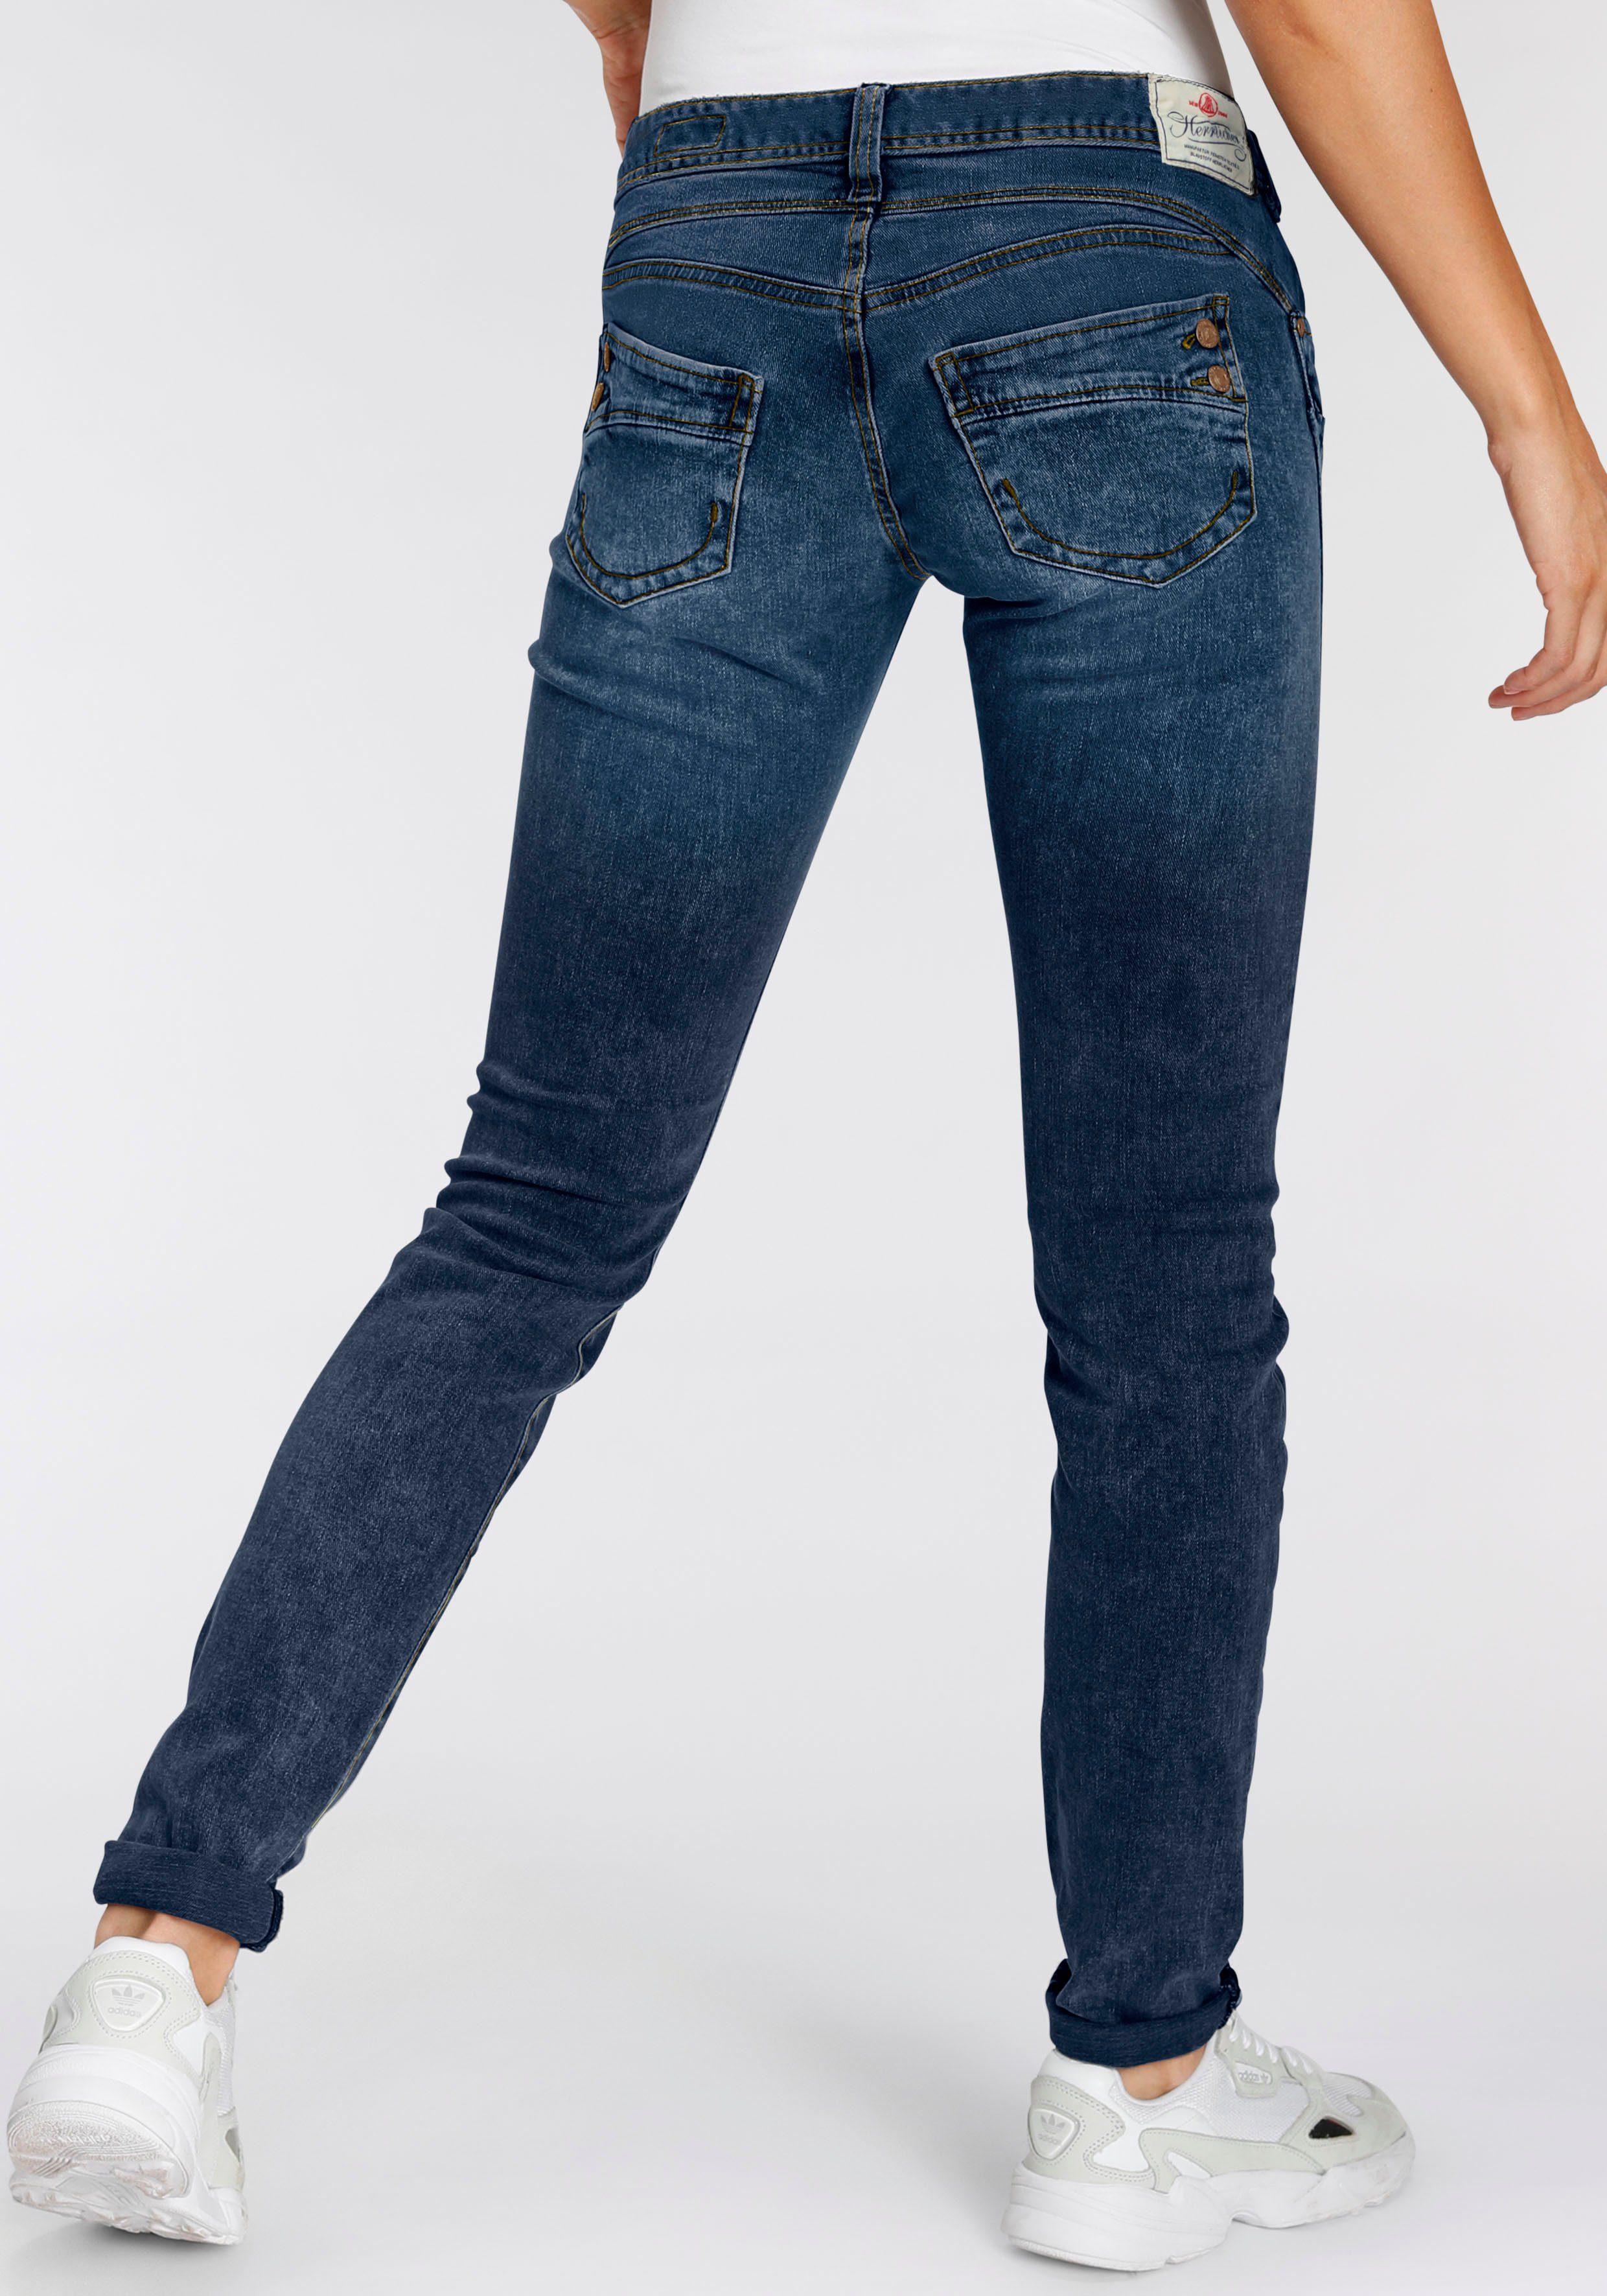 Damen Jeans Herrlicher Slim-fit-Jeans PIPER SLIM ORGANIC umweltfreundlich dank Kitotex Technologie